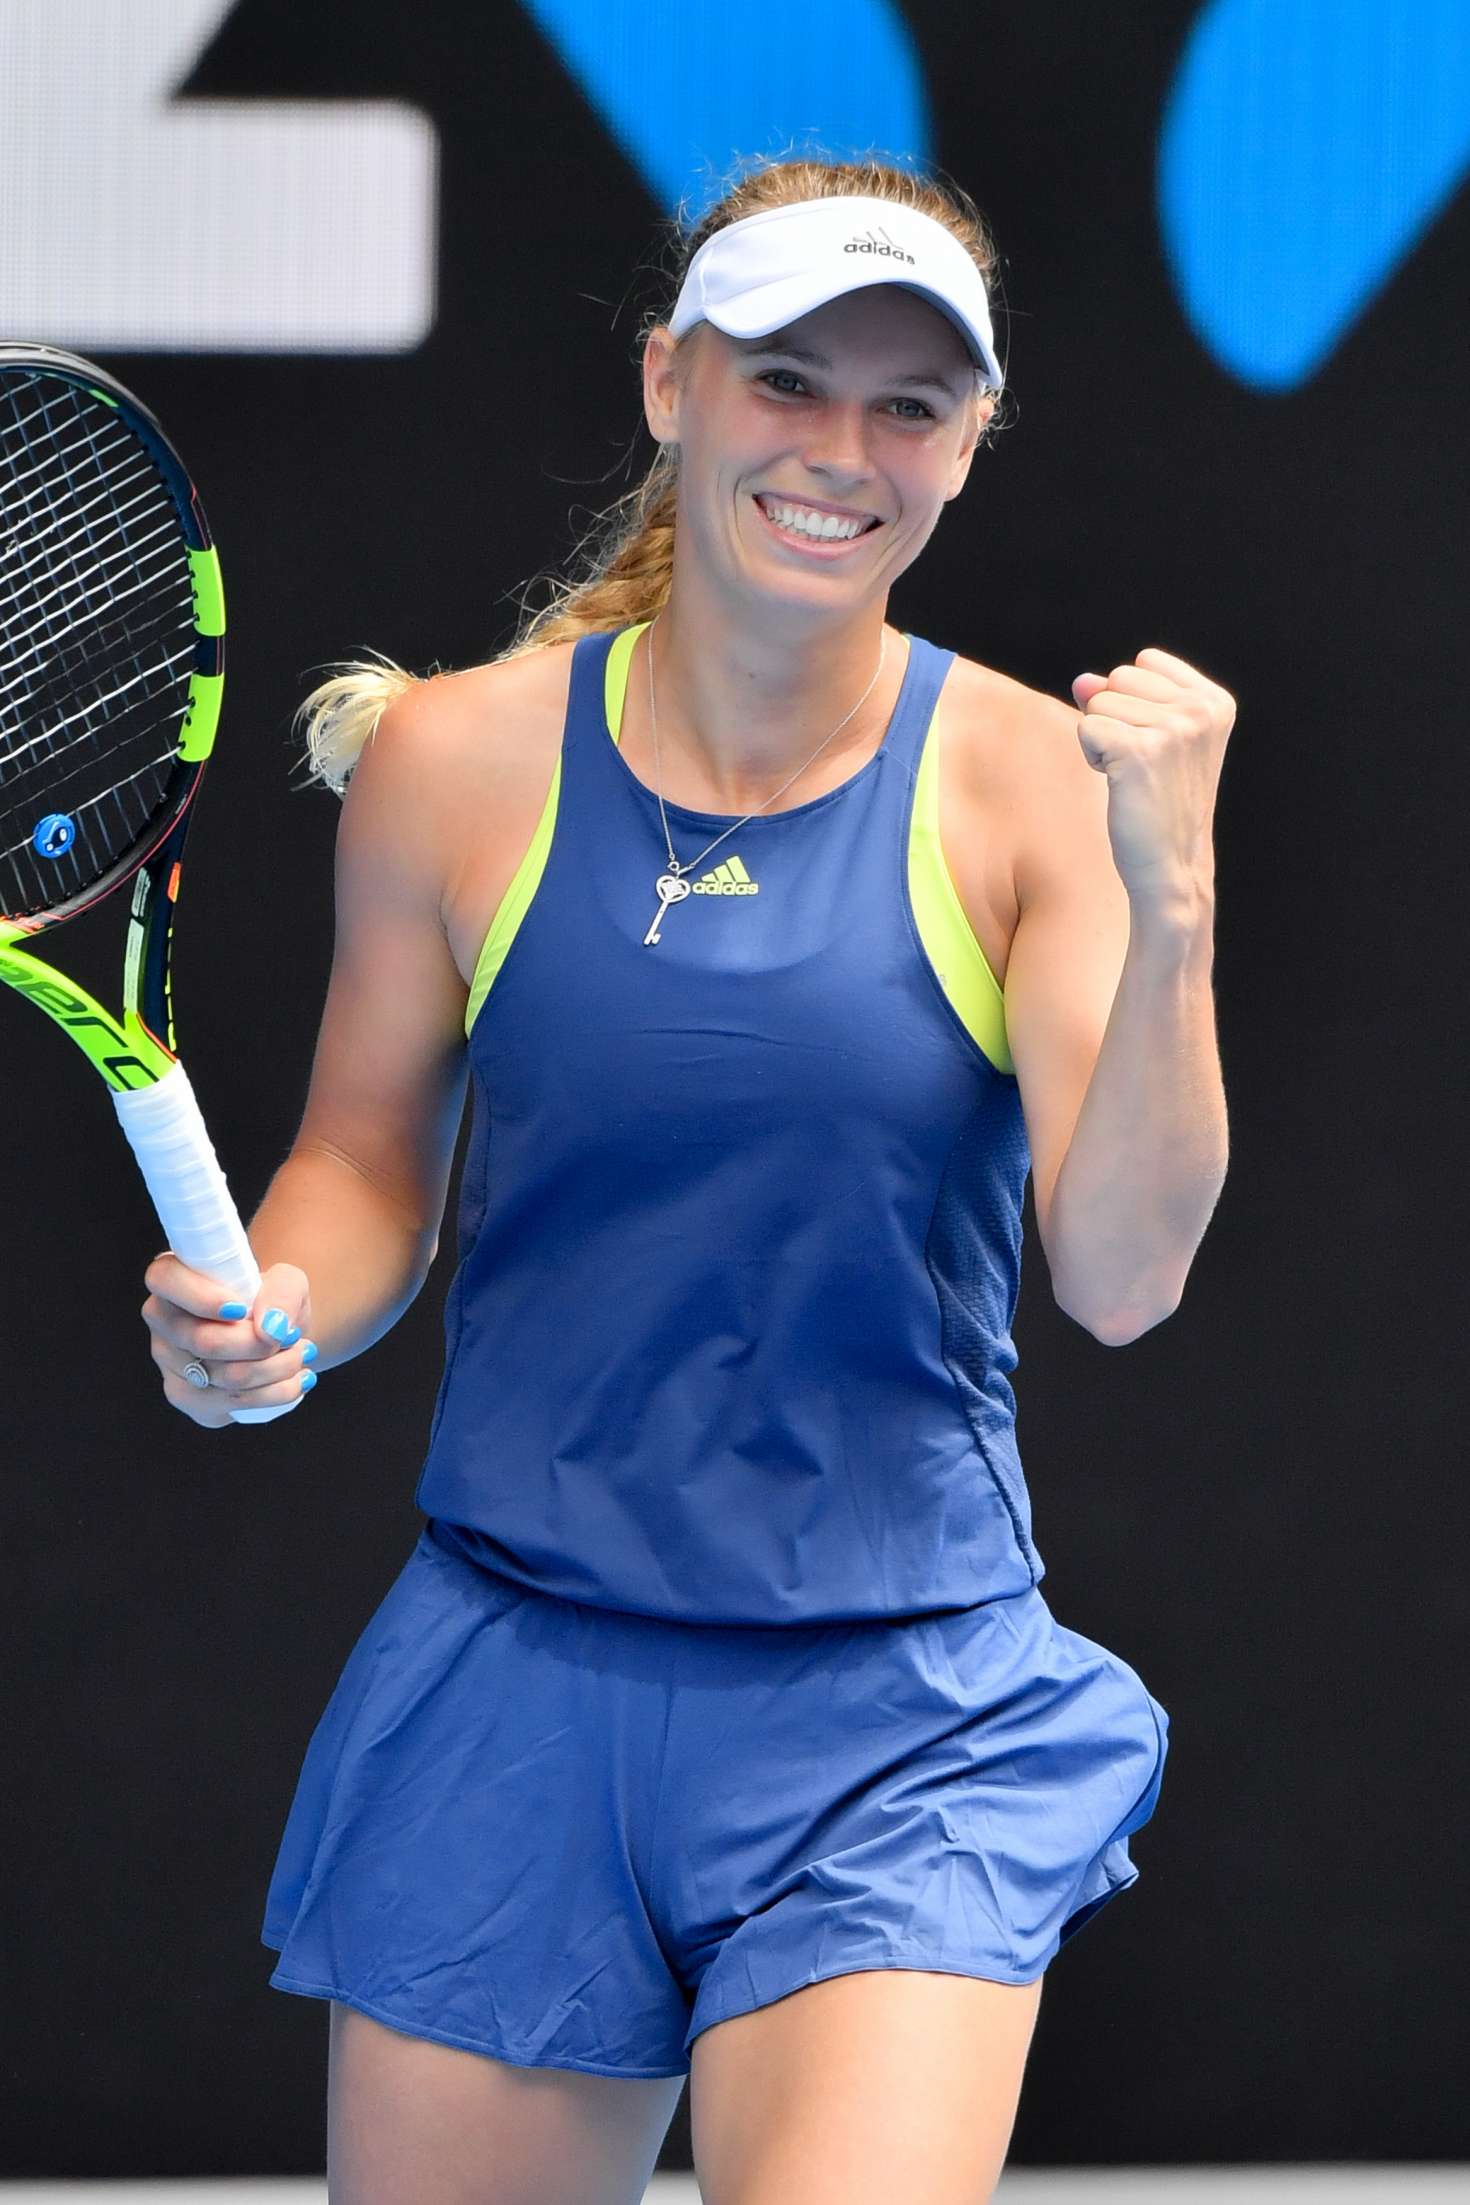 Caroline Australian Open Day 7 -22 |